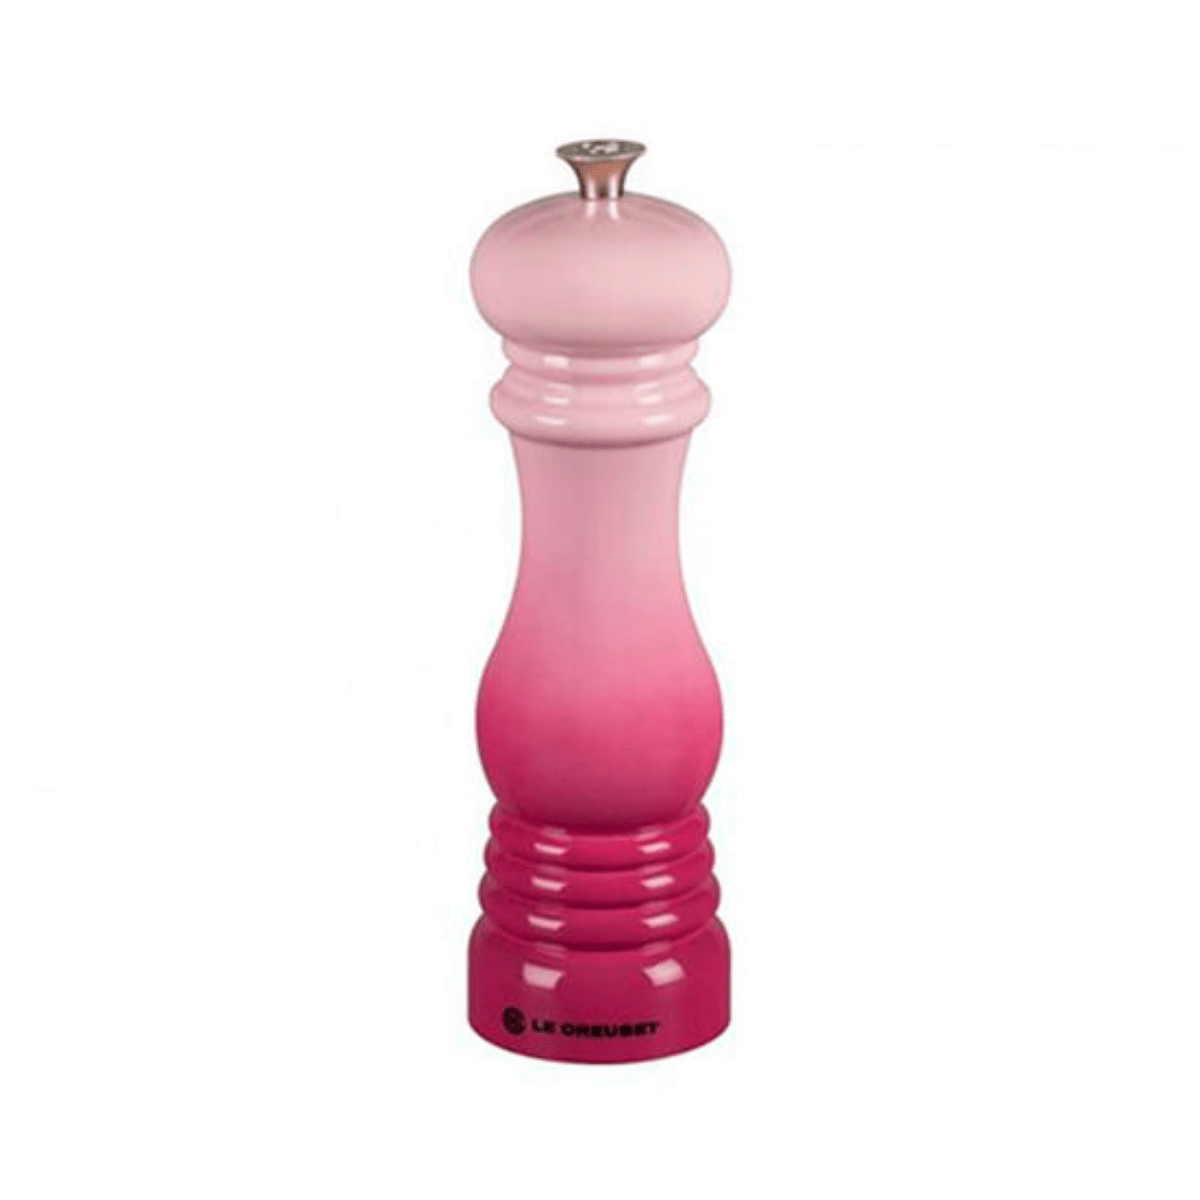 Moedor De Pimenta Cerâmica Rosa  Pink Chiffon Le Creuset